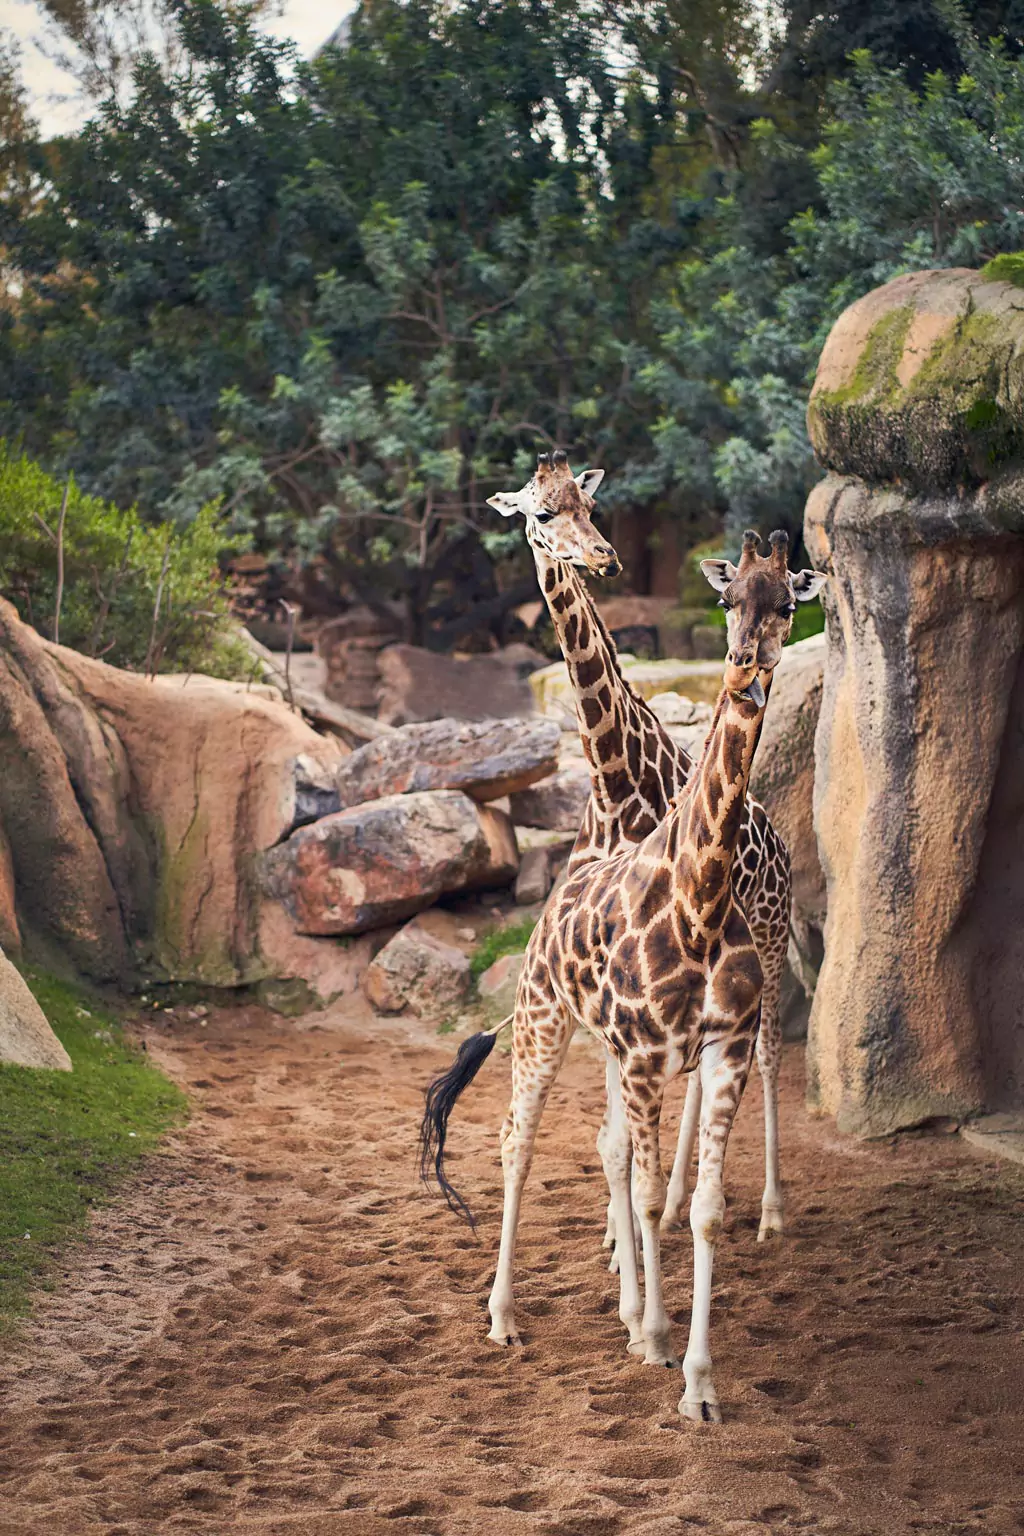 Giraffe side by side